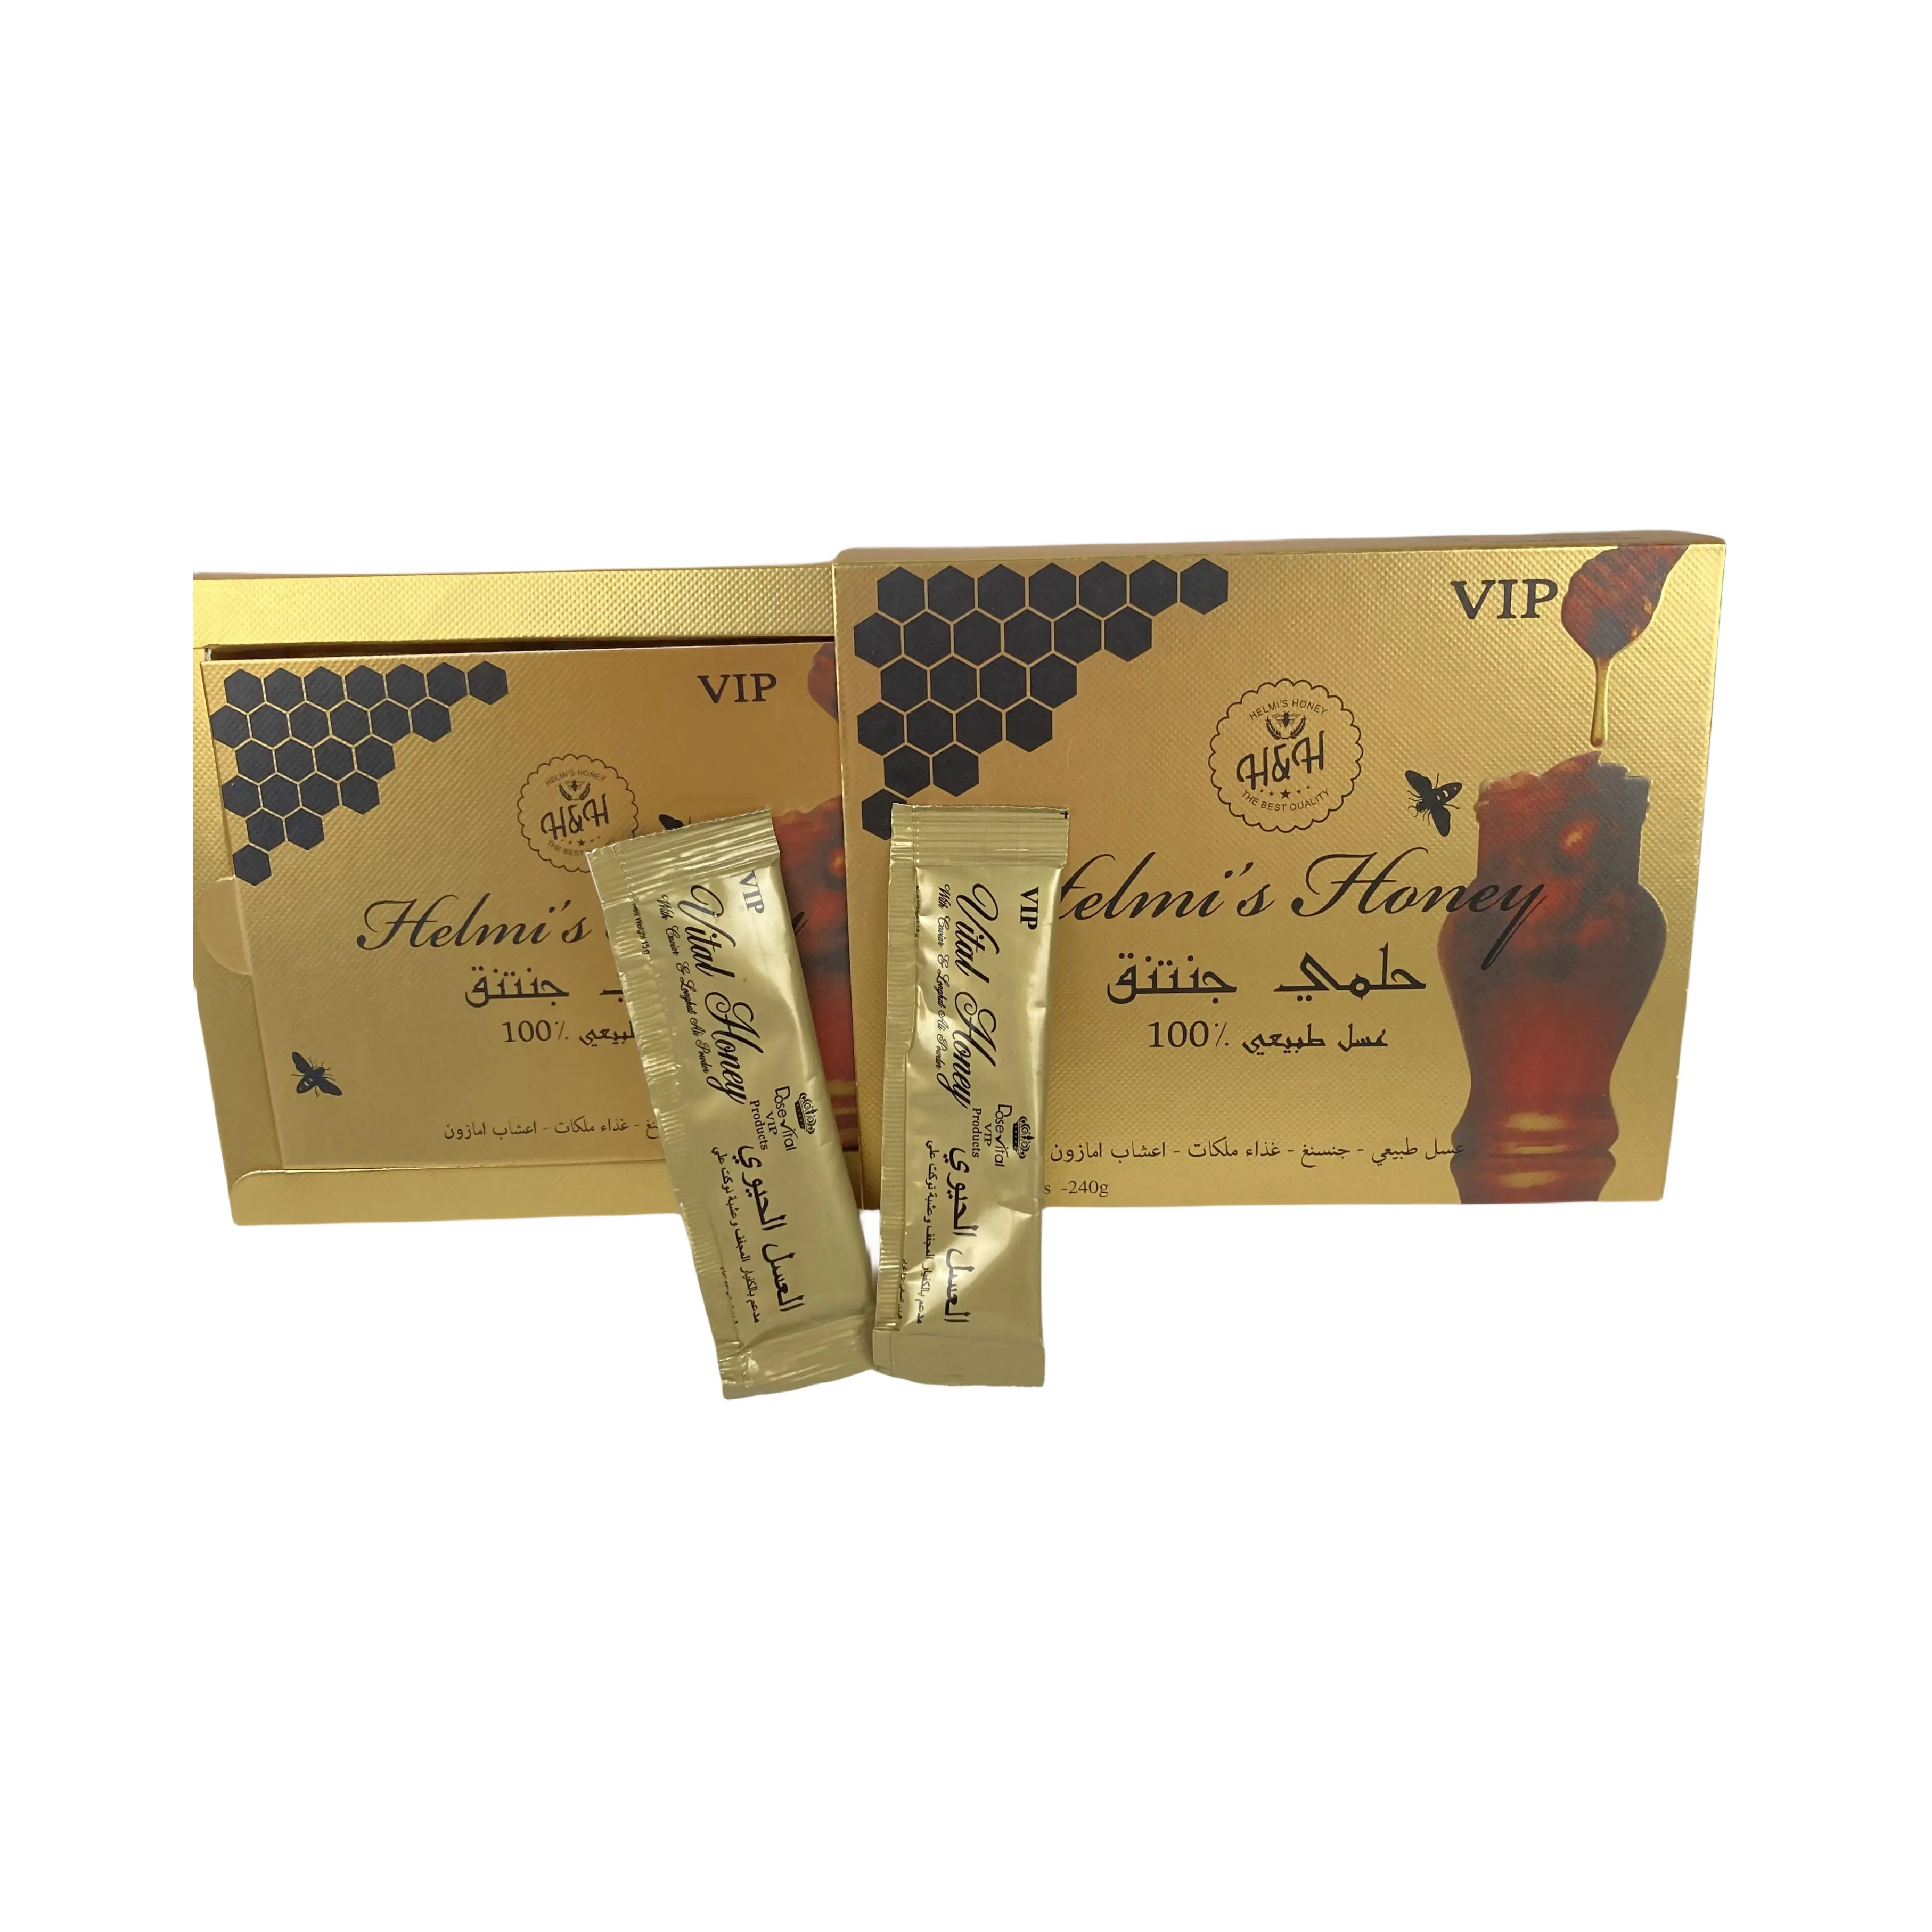 Oem personalizado Royal Vip mel natural doce mel real feito na Malásia atacado caixa de exibição Black Bull